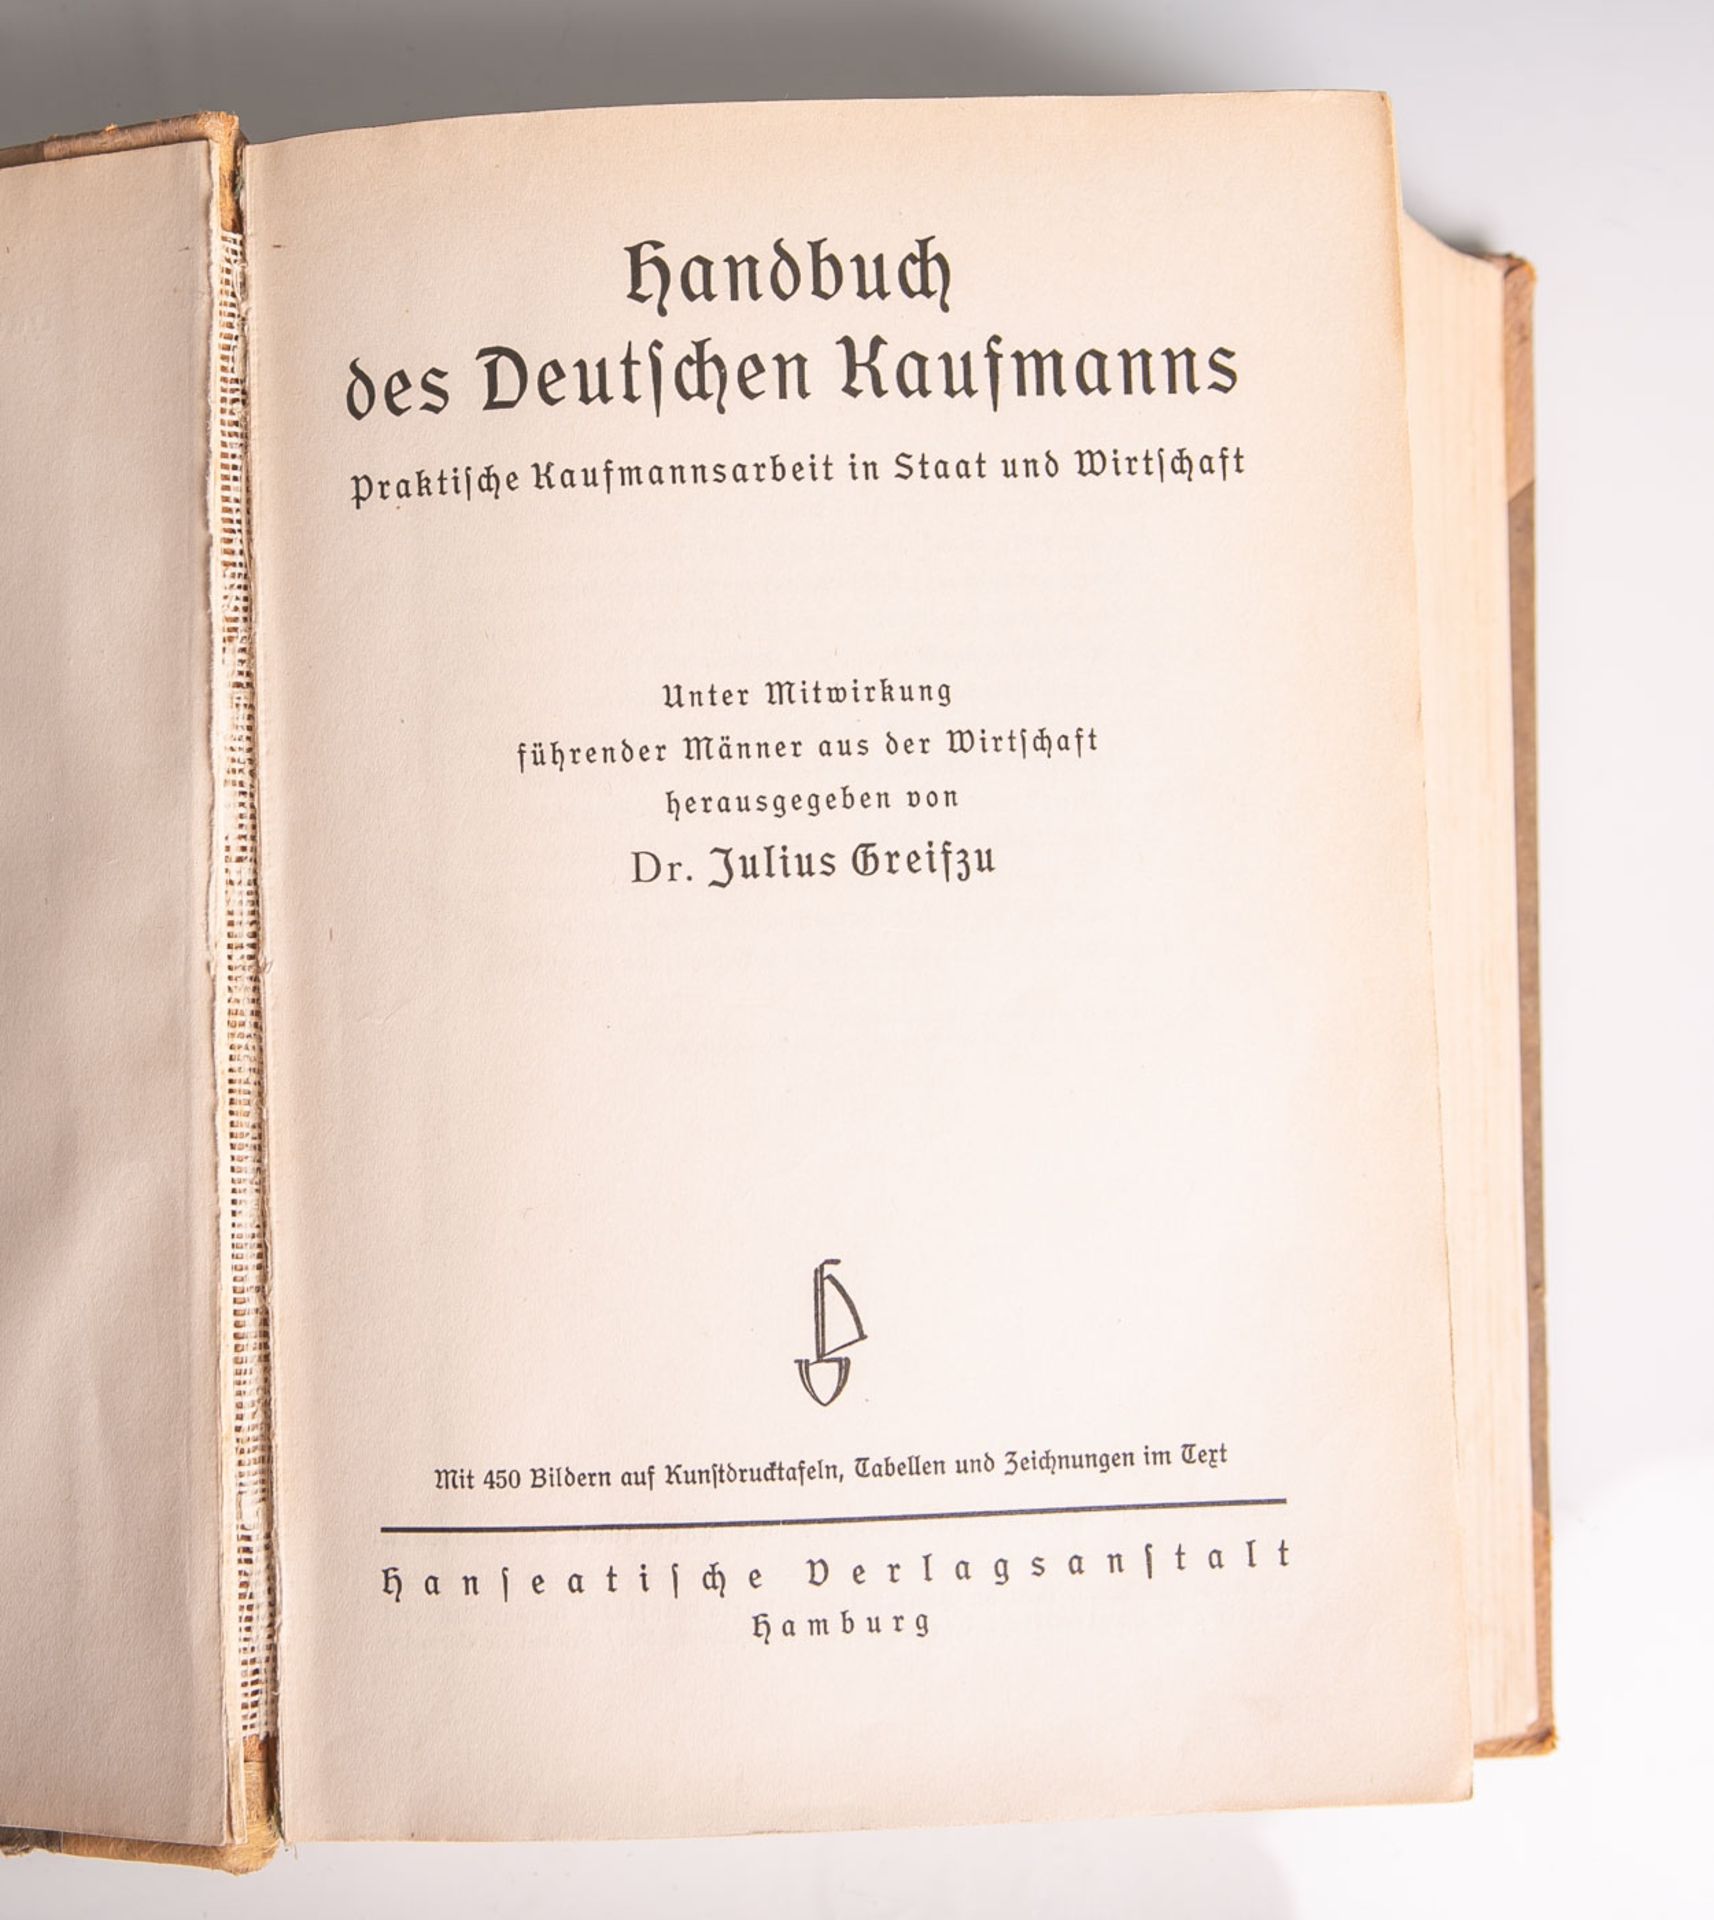 Greifzu, Julius Dr. (Hrsg.), "Handbuch des Deutschen Kaufmanns-Praktische Kaufmannsarbeitin Staat